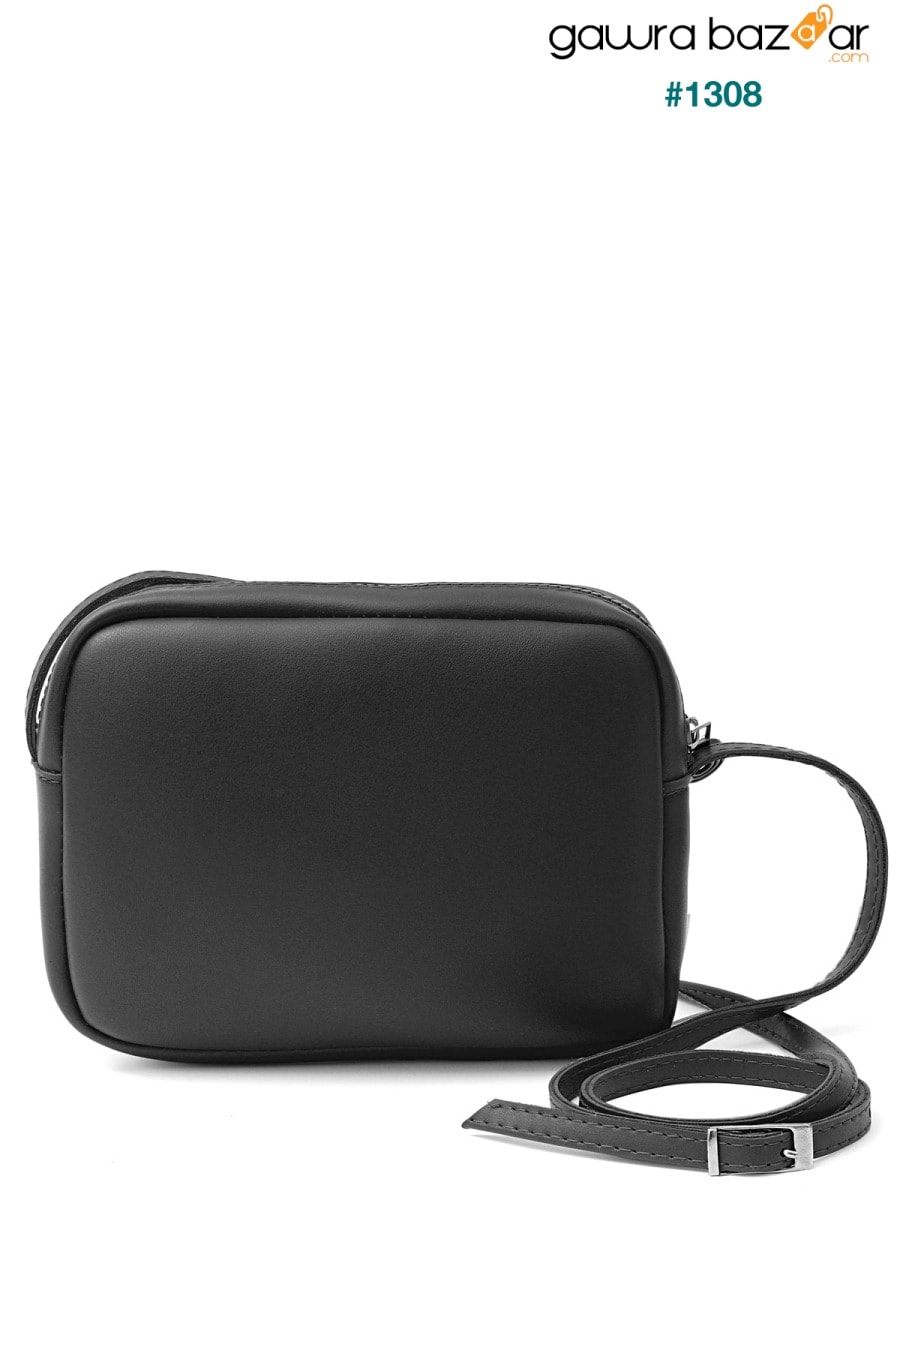 حقيبة كروس أوربان صغيرة سوداء أصلية للسيدات وحقيبة كتف بحزام قابل للتعديل Tonny Black 4